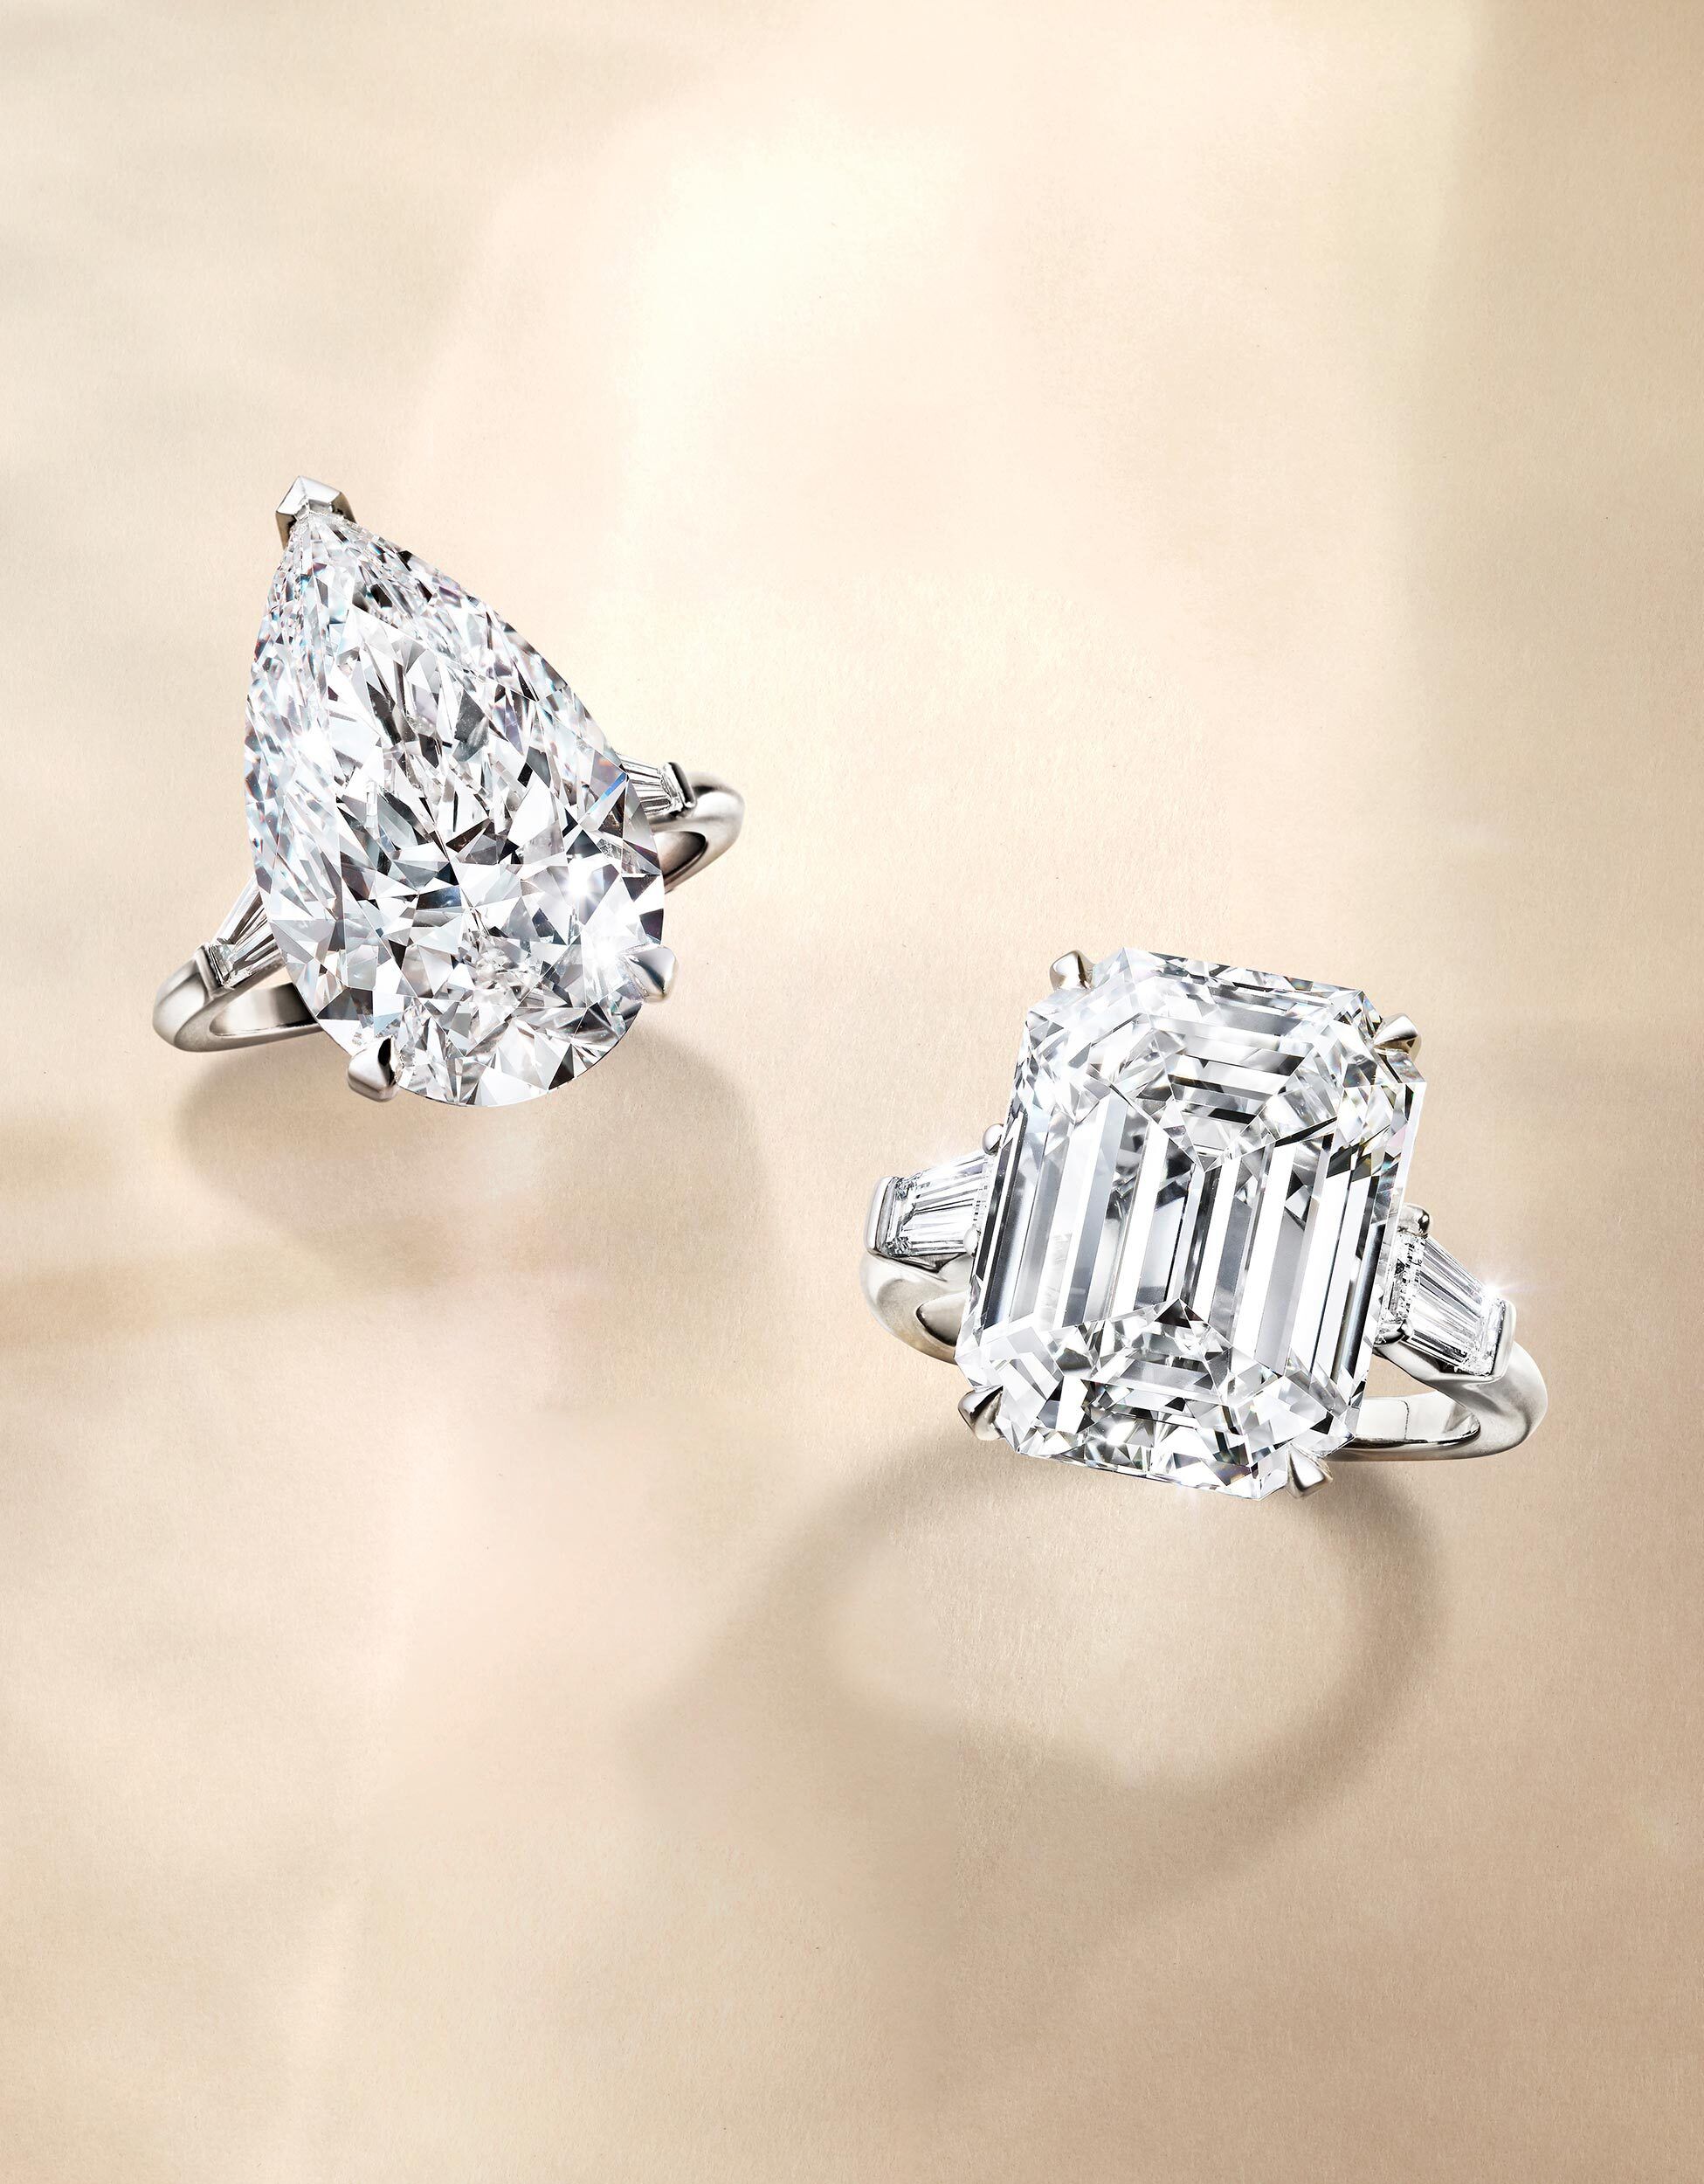 Two Graff Unique Solitaire Diamond rings